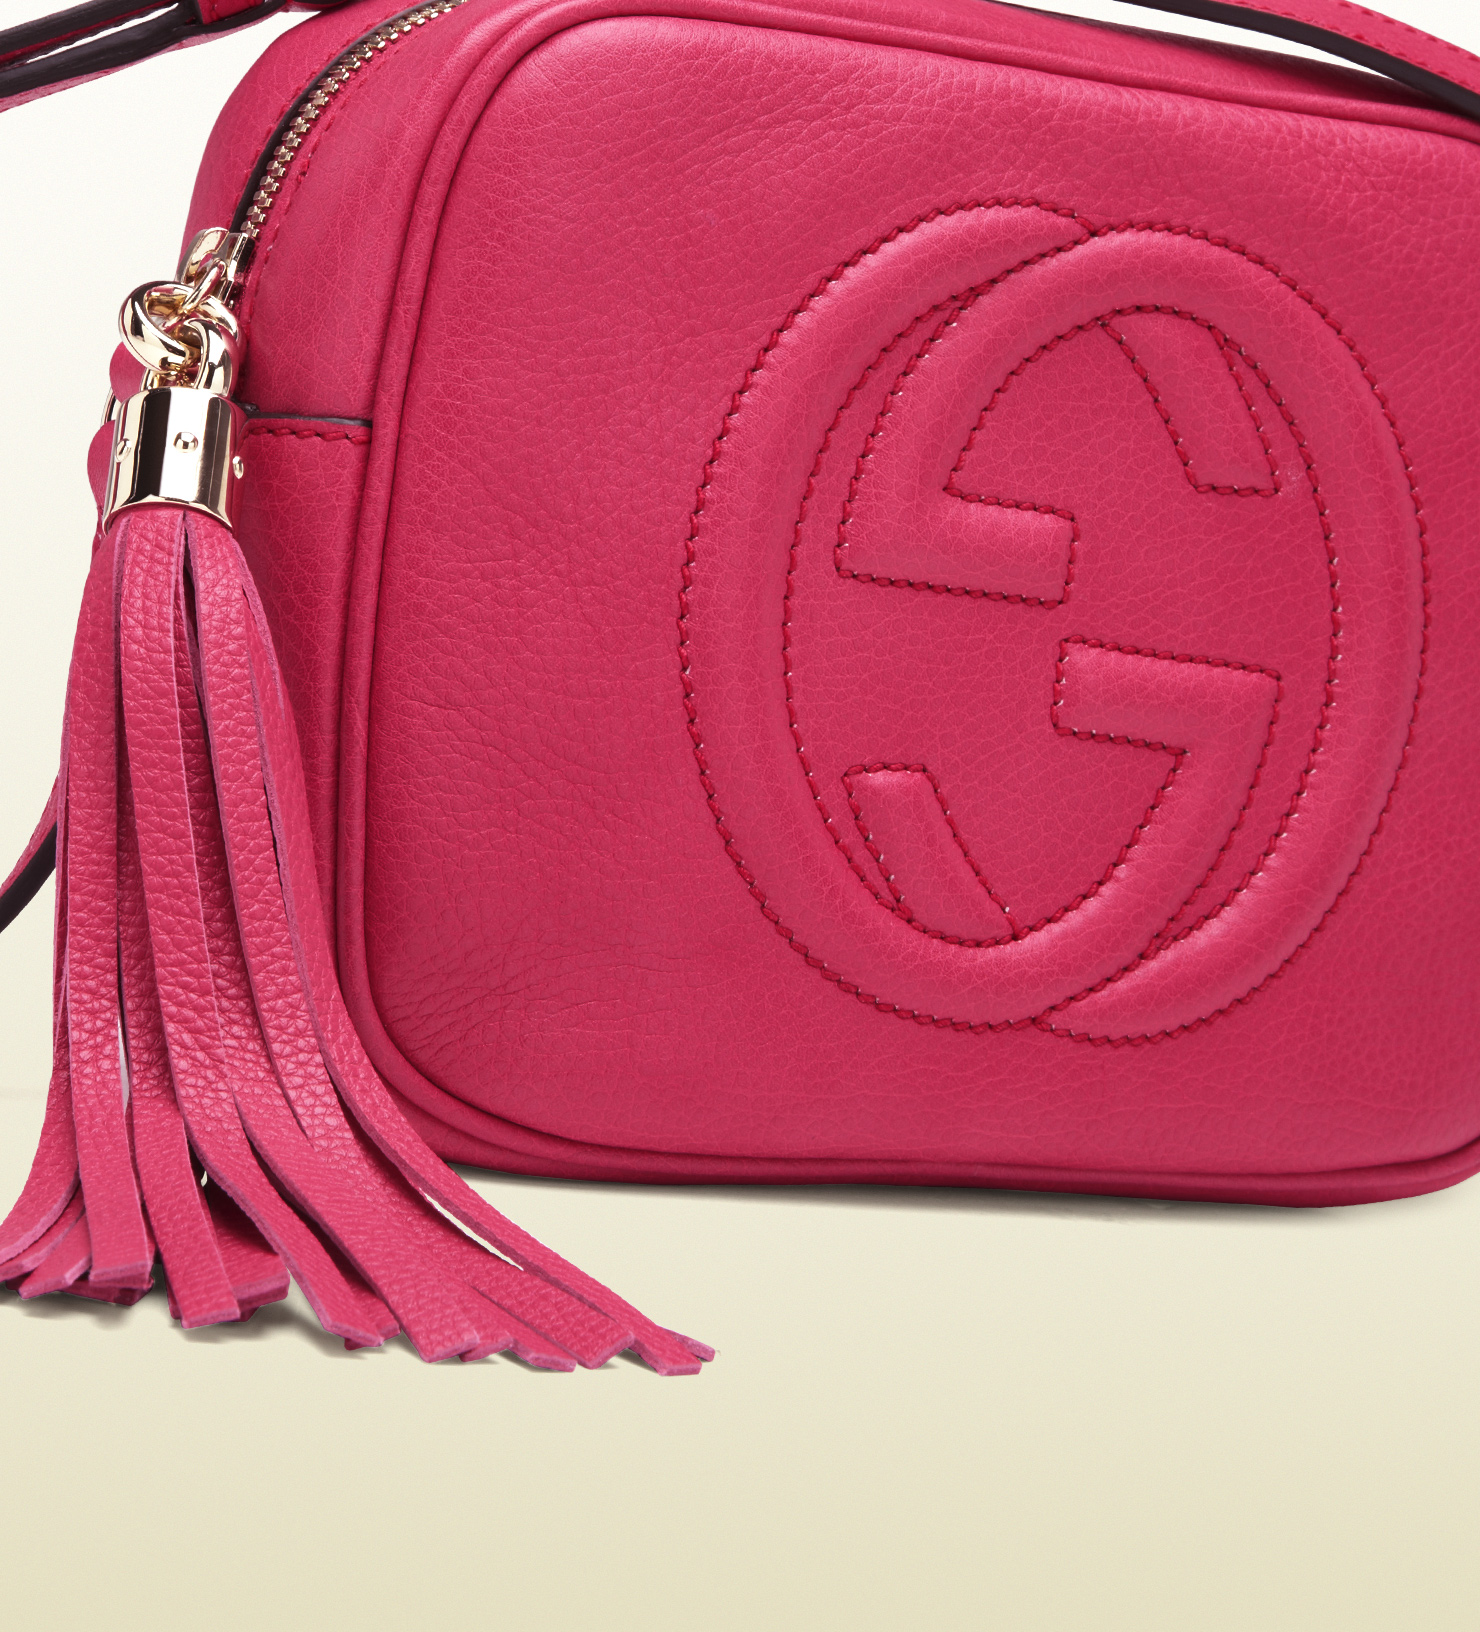 Shocking Pink Handbag